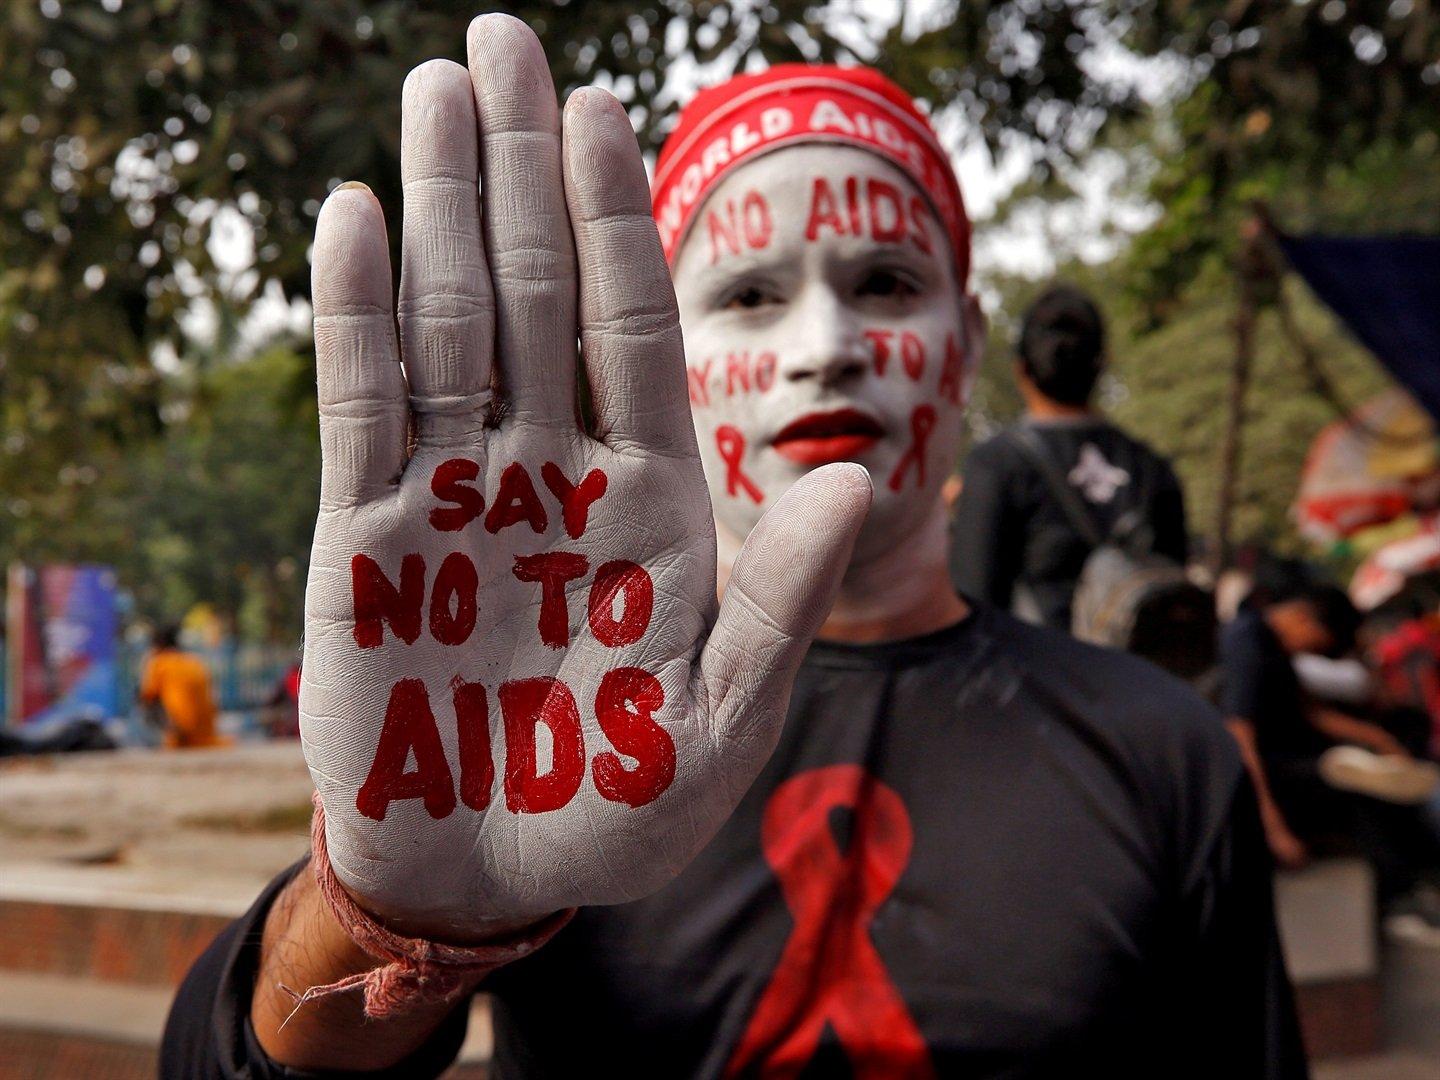 صورة لأحد المشاركين في حملة التوعية بمرض الإيدز بالهند طالياً وجهه بالأبيض وكاتباً على يده قل لا للإيدز وعلى وجهه نفس العبارة وشعار مرض الإيدز الاحمر.